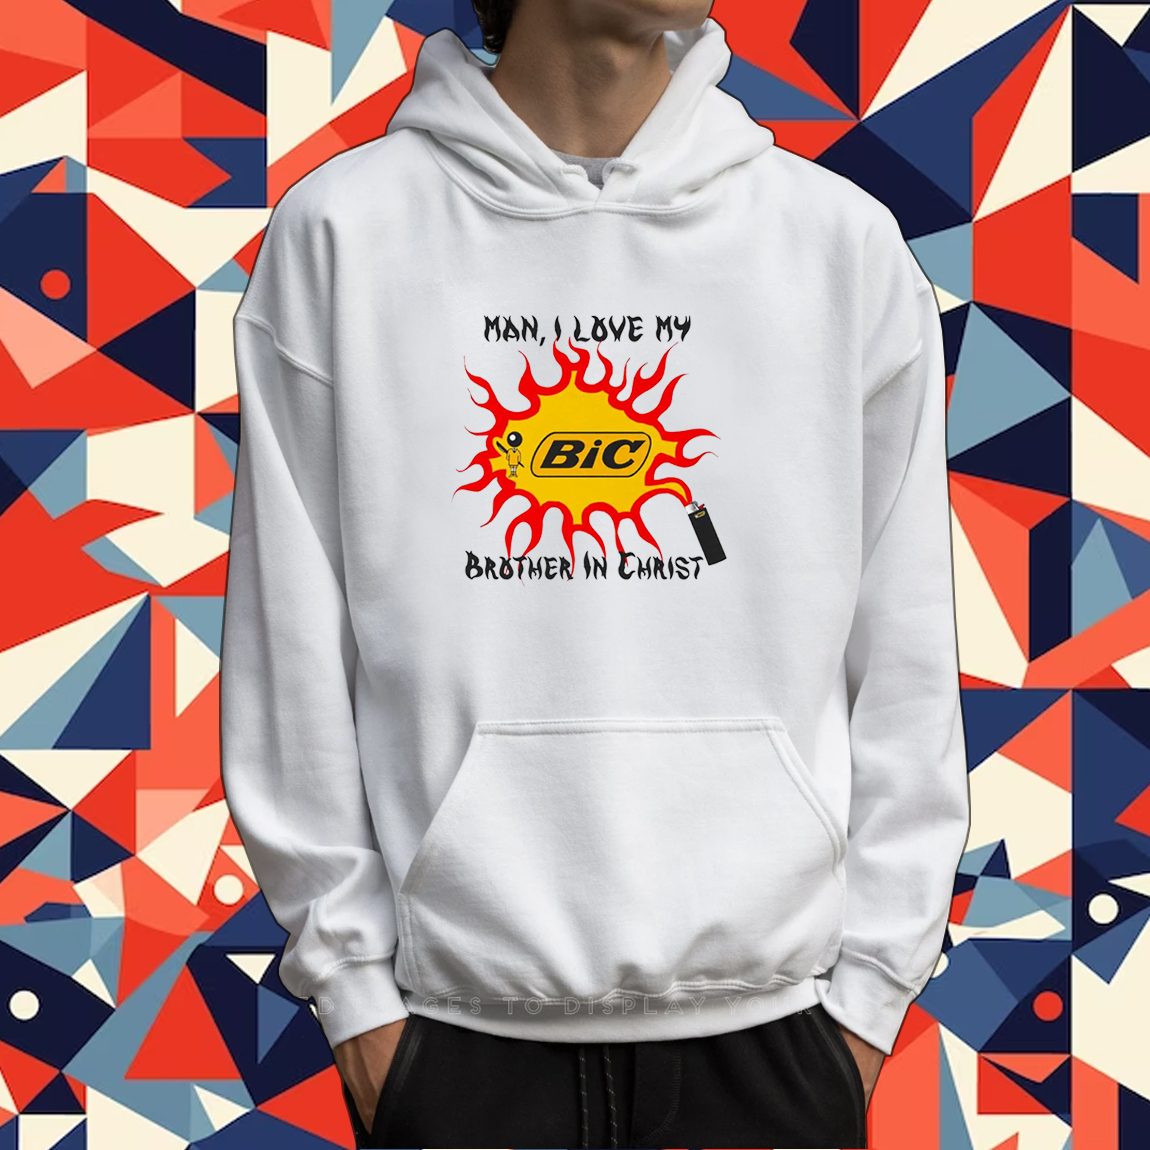 Snoopy Peace Love Seattle Mariners Shirt, hoodie, longsleeve, sweatshirt,  v-neck tee